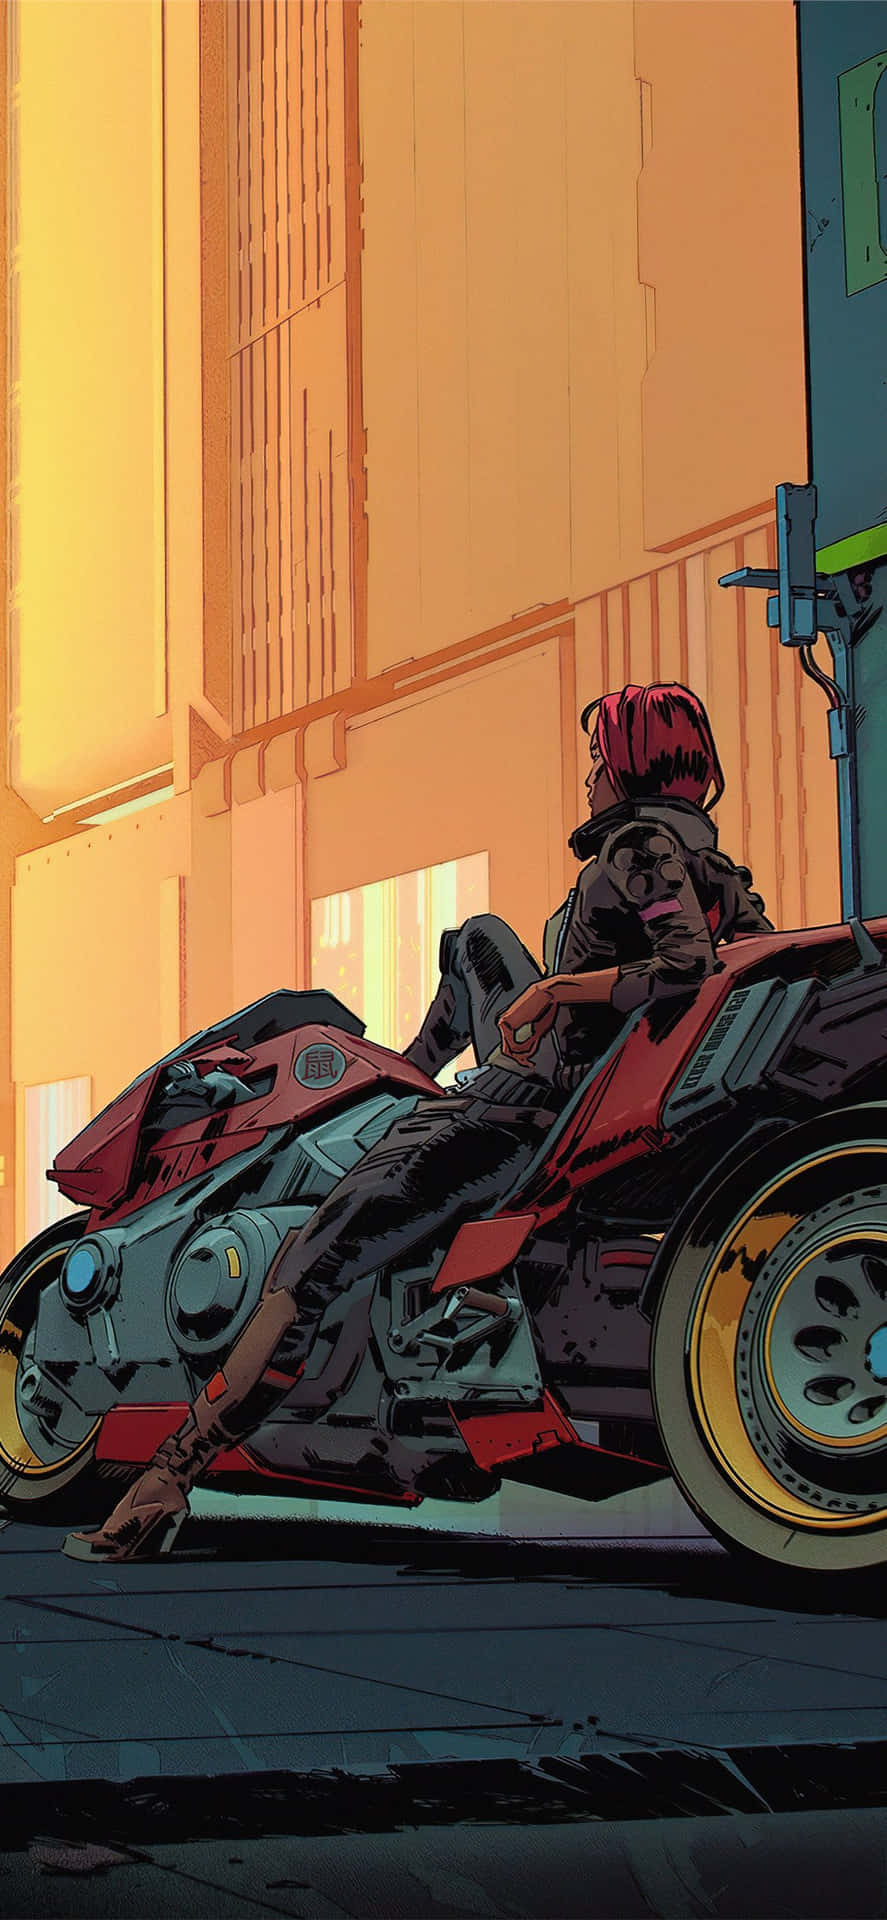 Fondode Pantalla De Cyberpunk 2077 Para Iphone X: Mujer Sentada En Una Motocicleta.